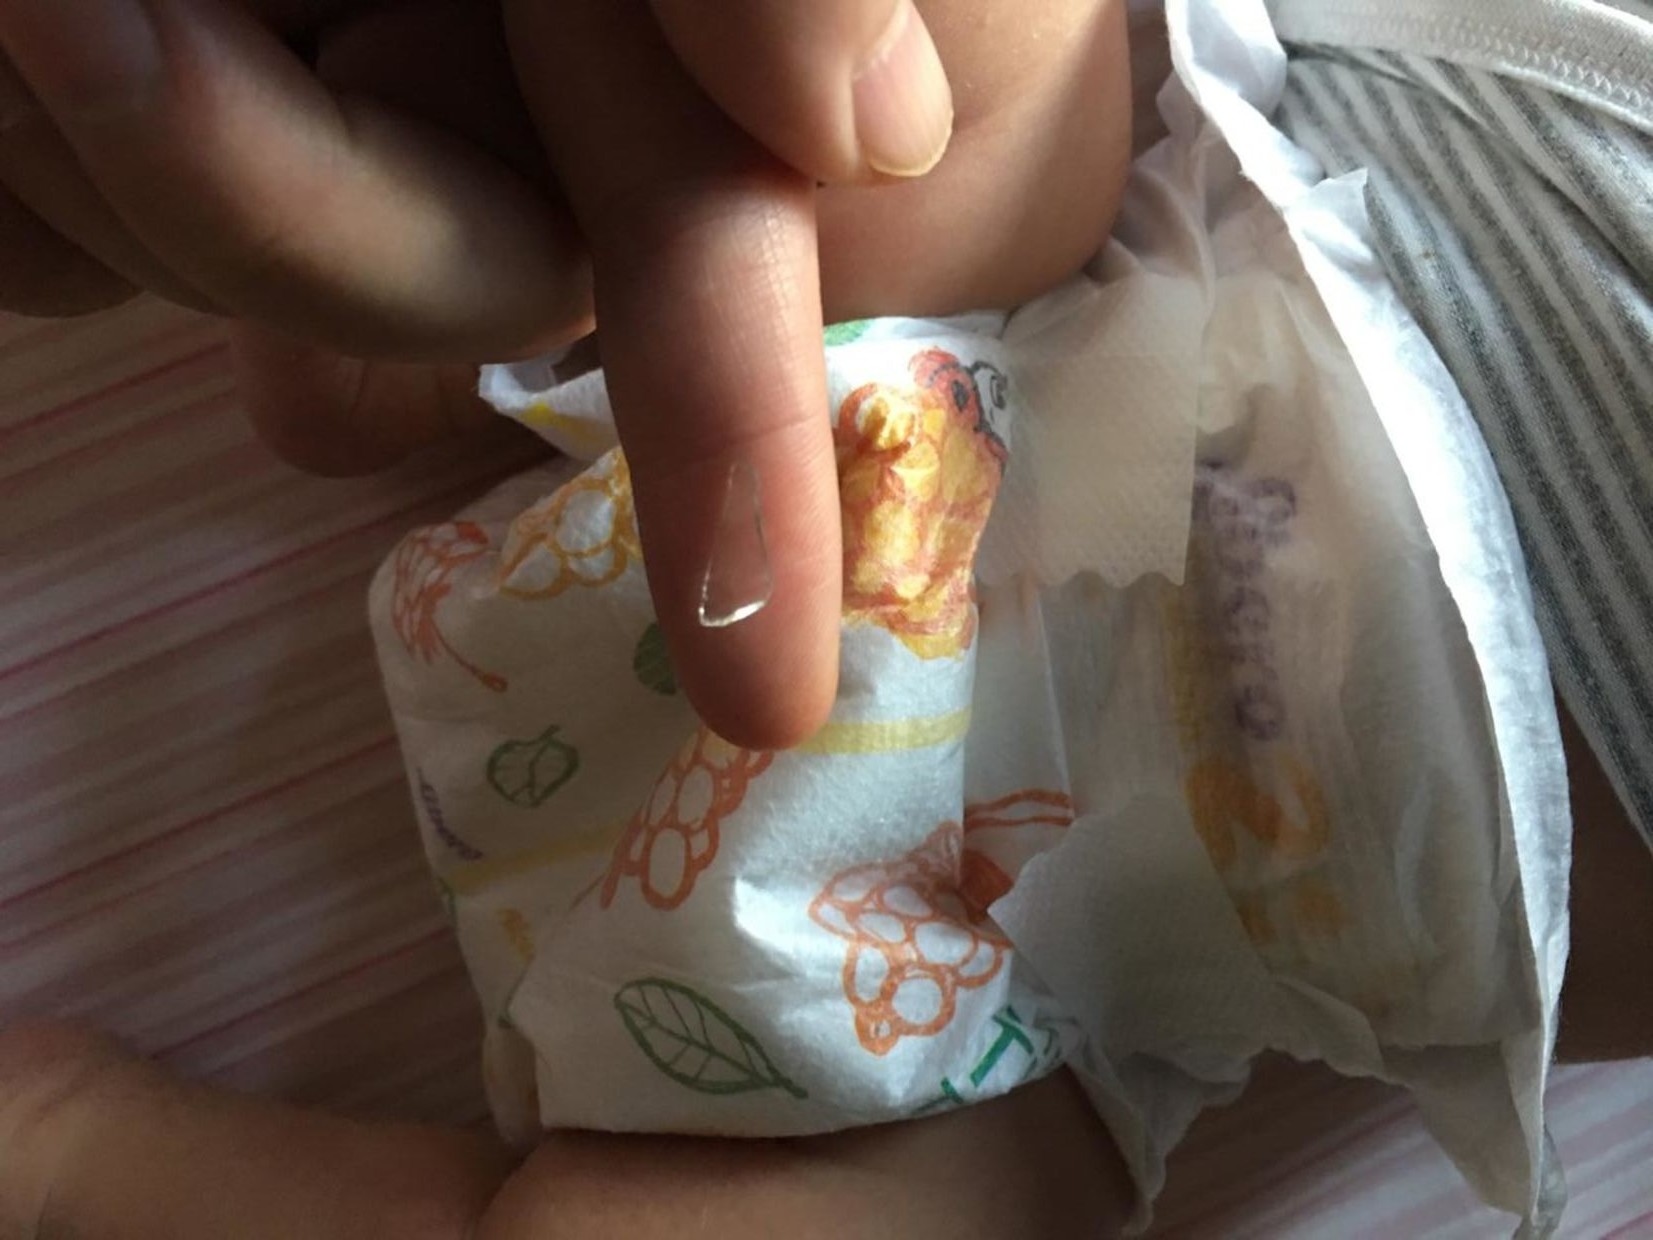 Moren fant glasskår i babyens bleie. Nå har hun sendt inn en klage